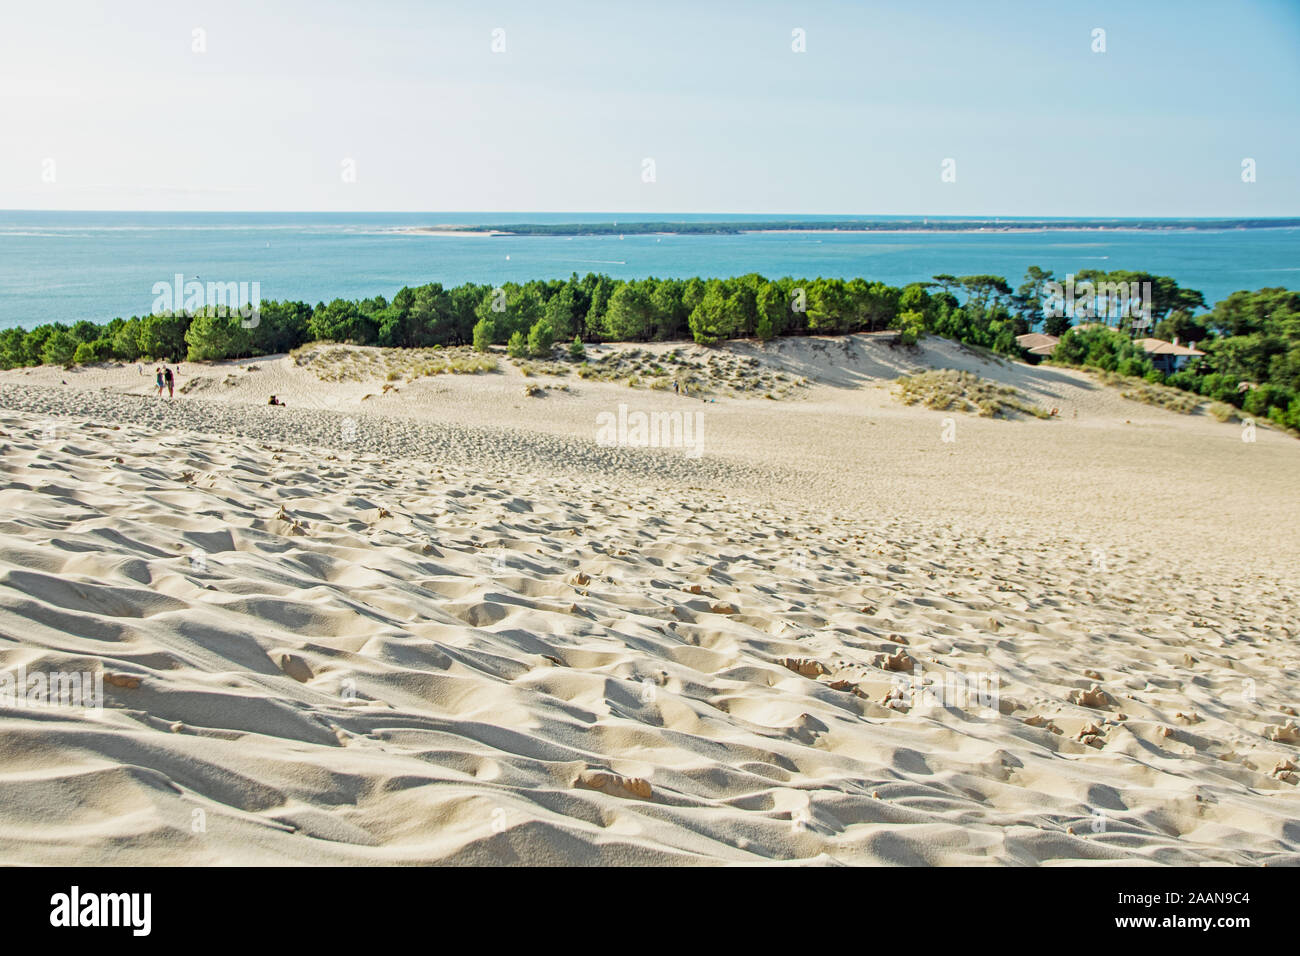 Vue sur la plage de sable de dune du Pilat et du bassin d'arcachon en france, aquitaine. Banque D'Images